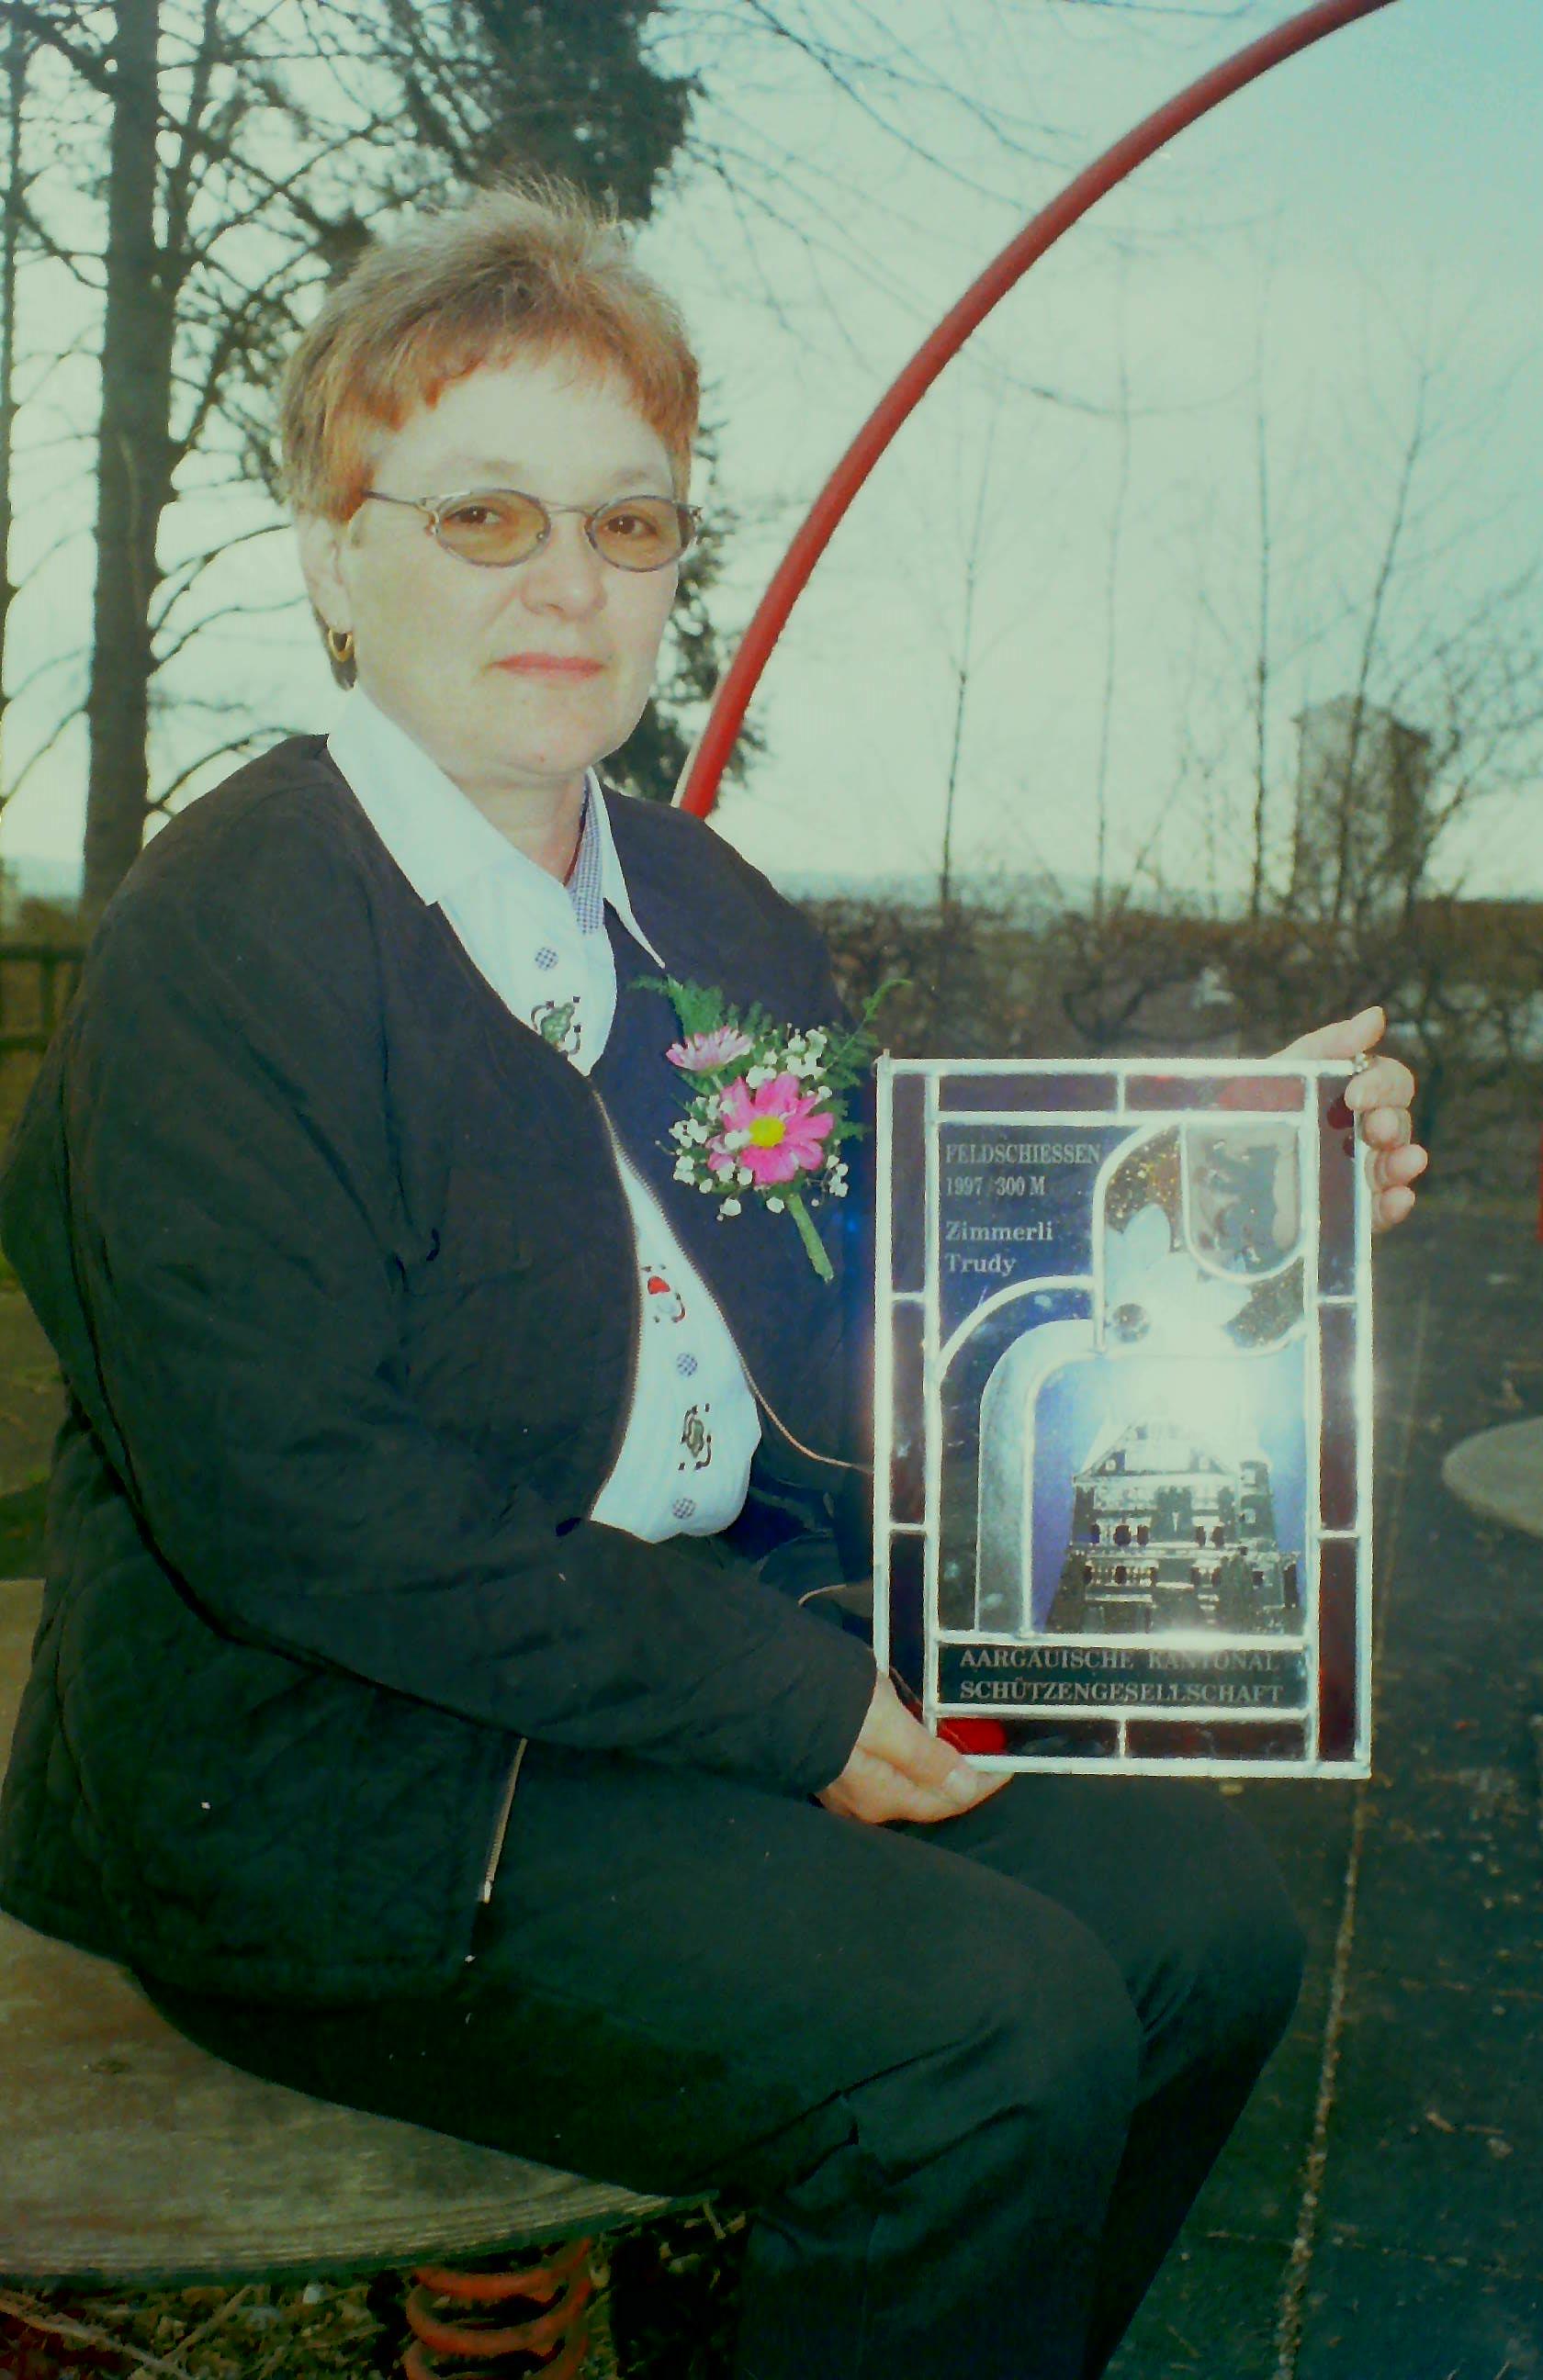 Wappenscheiben Gewinnerin Trudi Zimmerli 1998